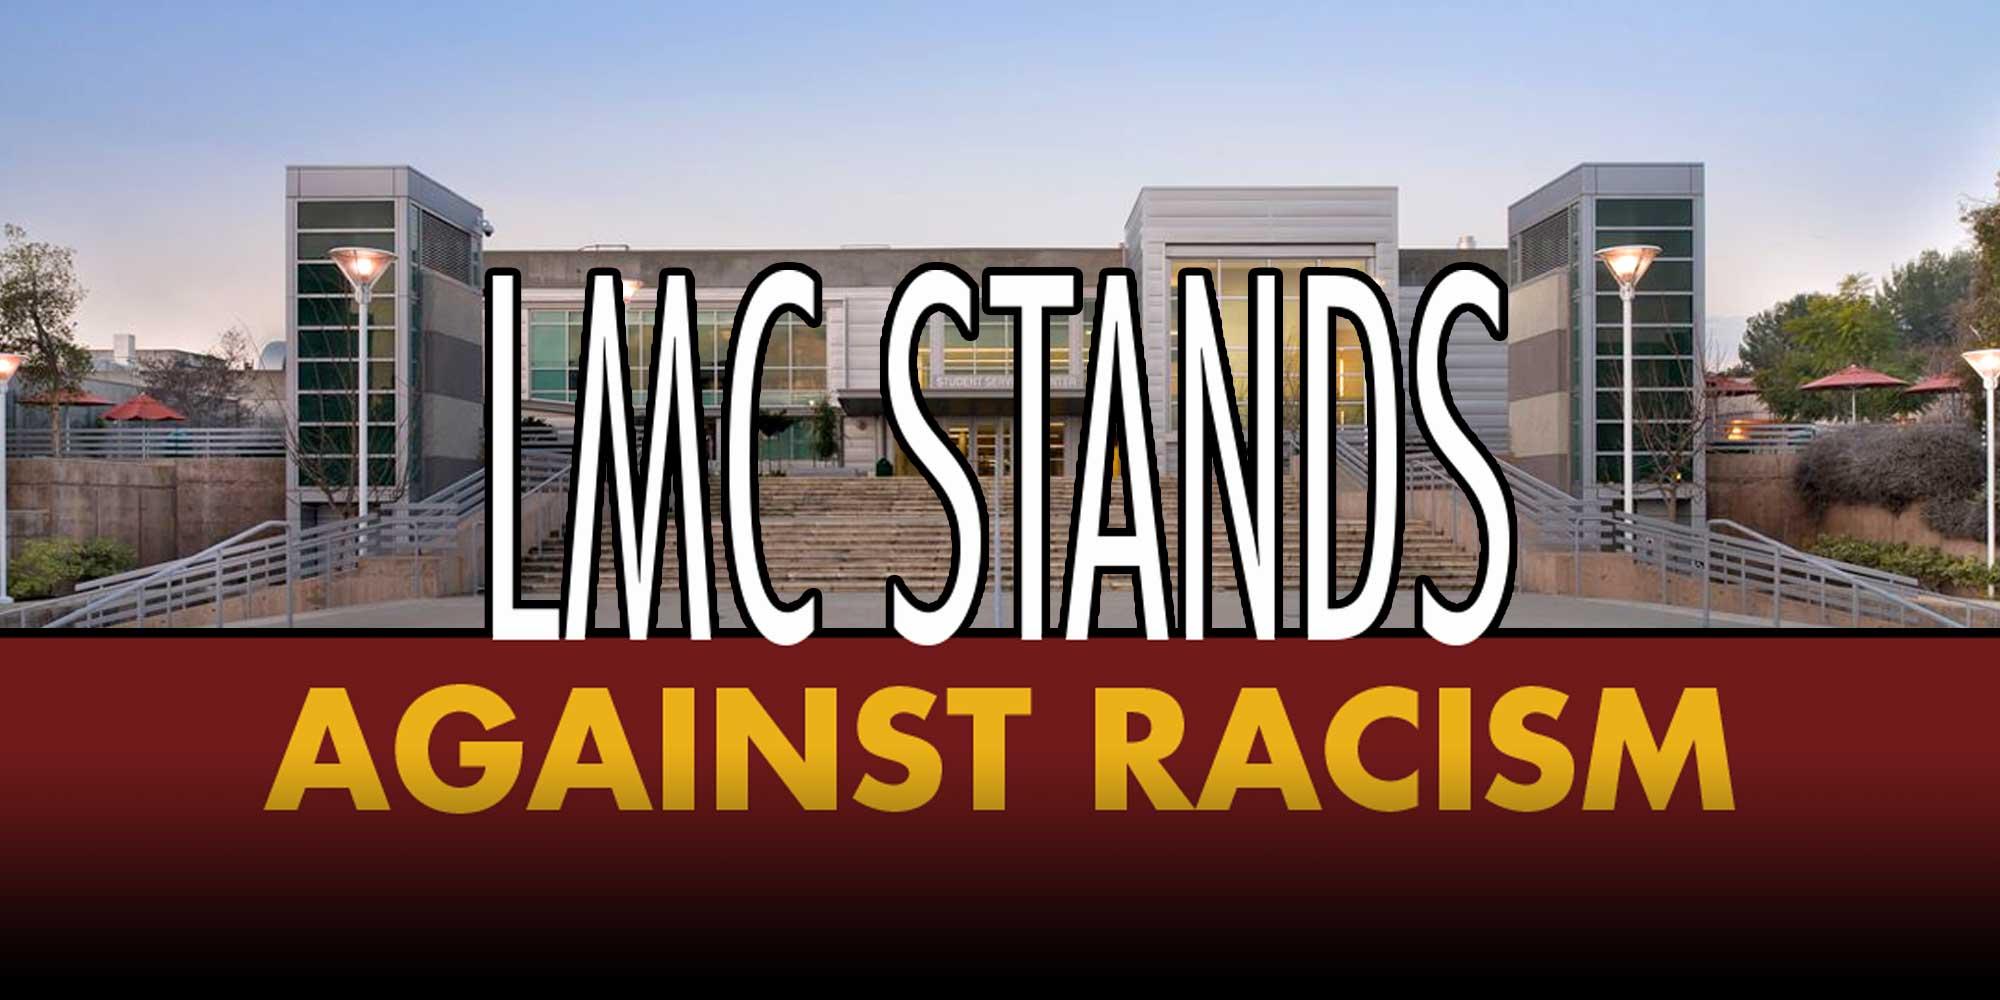 LMC反对种族主义